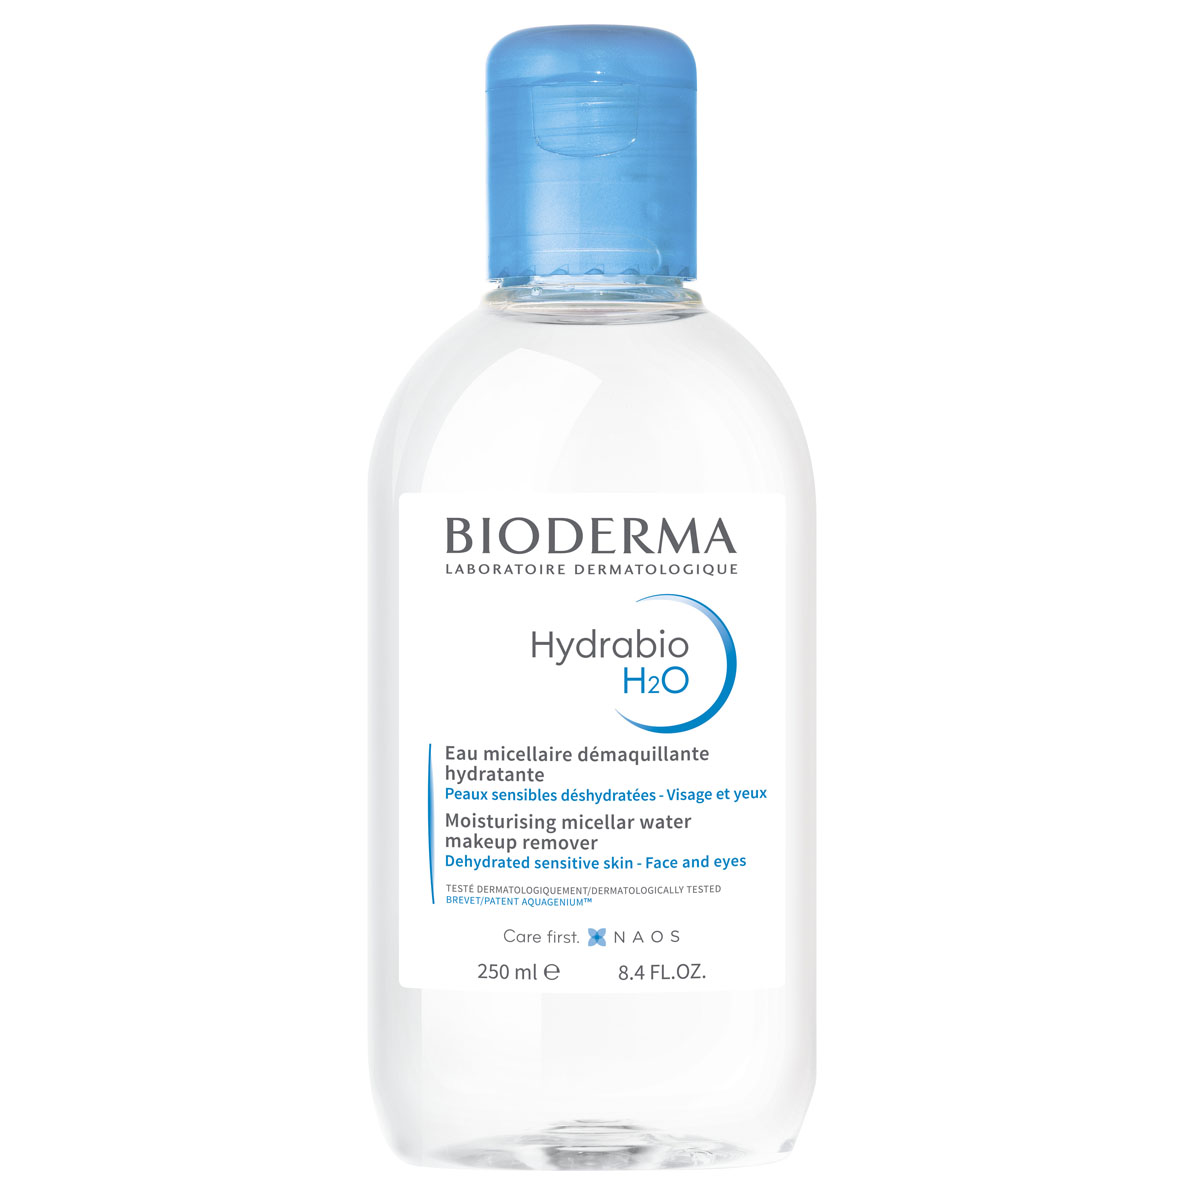 Bioderma Увлажняющая мицеллярная вода, 250 мл (Bioderma, Hyd